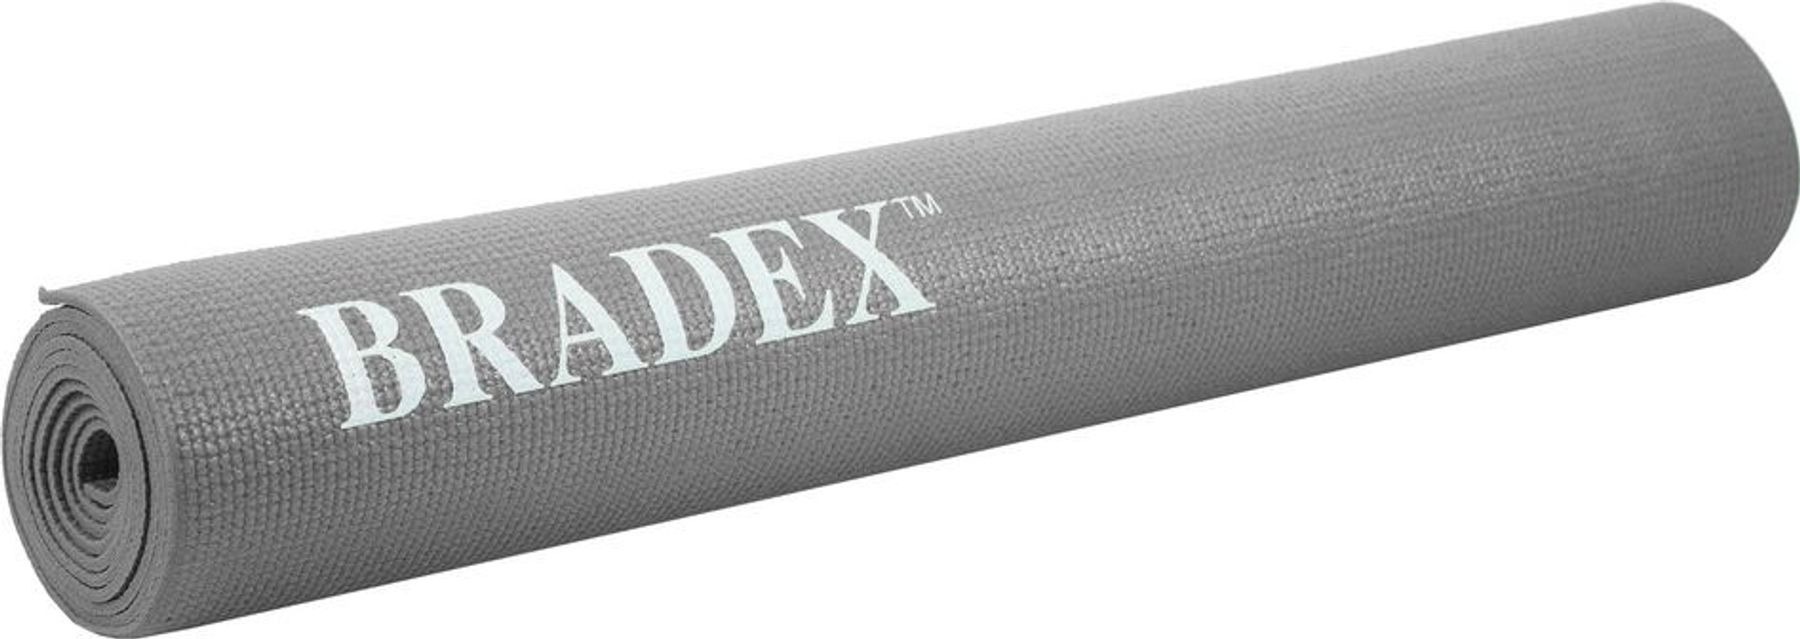 фото Коврик для йоги и фитнеса bradex sf 0684, 173*61*0,5 см, серый